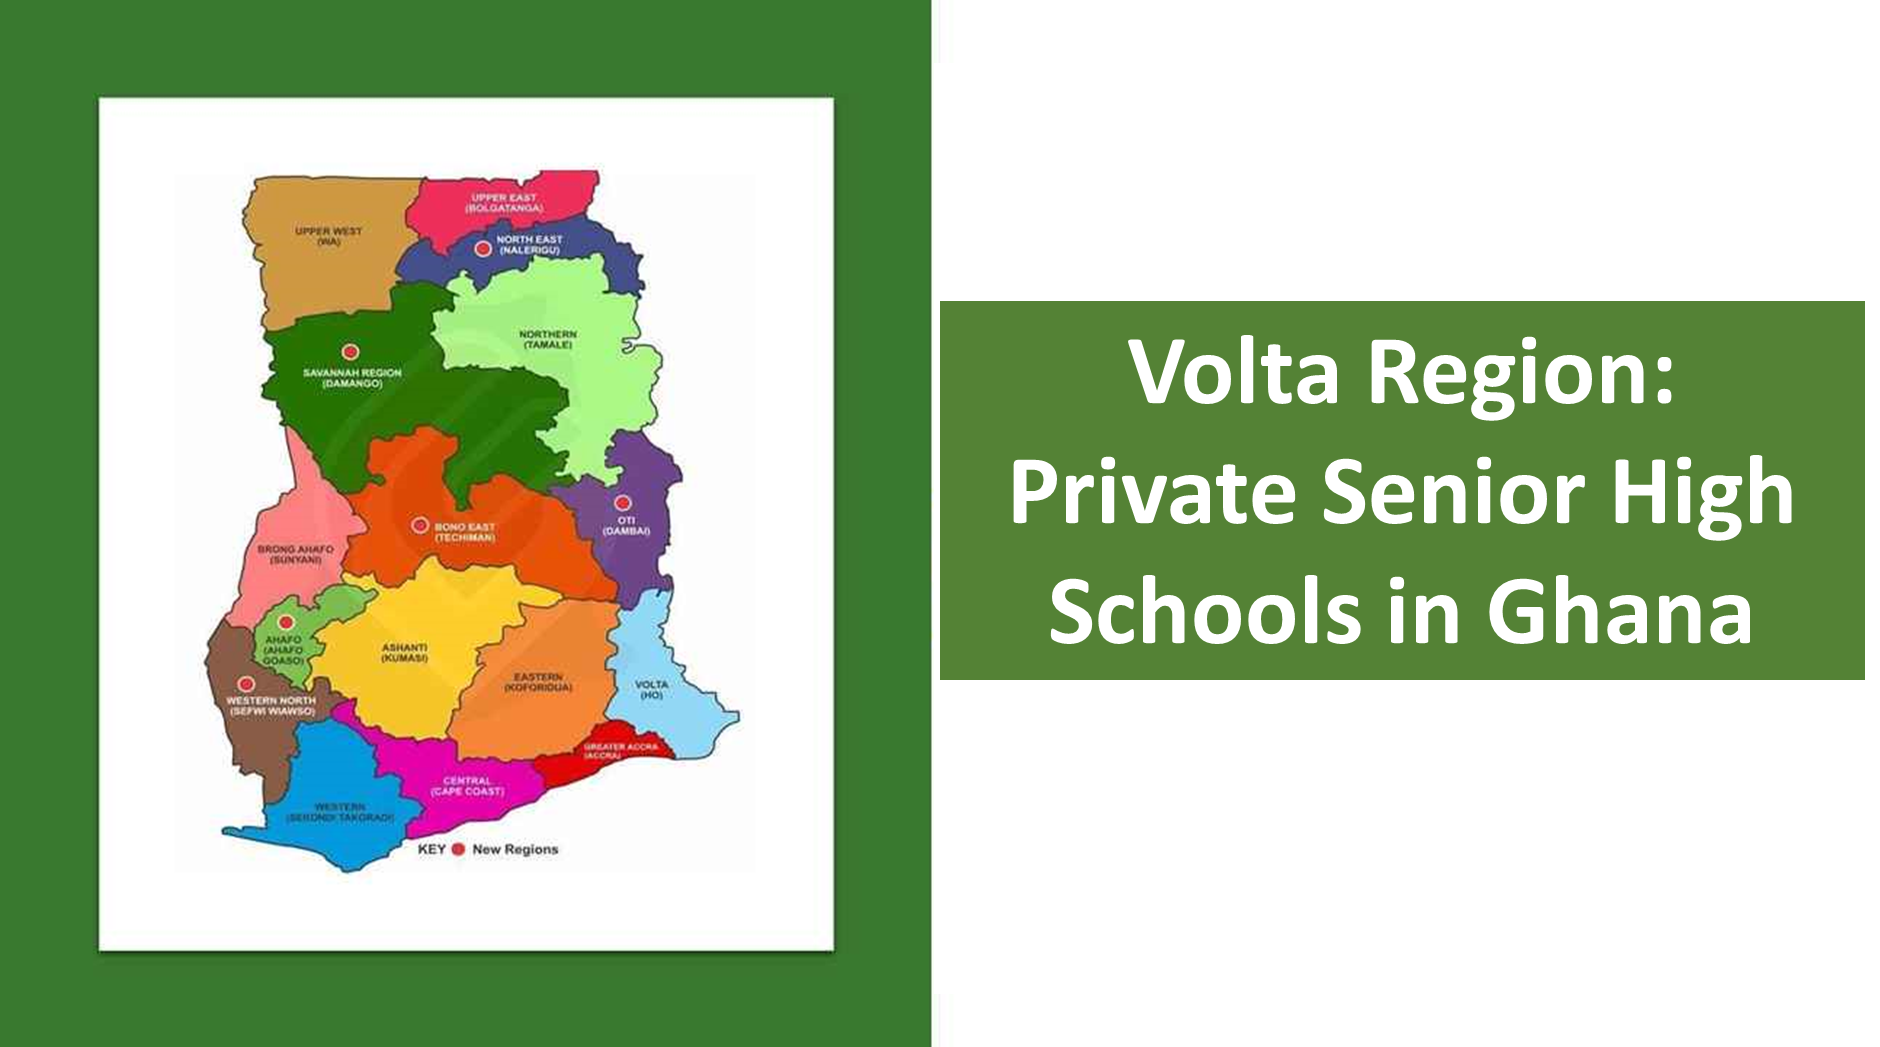 Private senior high schools in Volta region